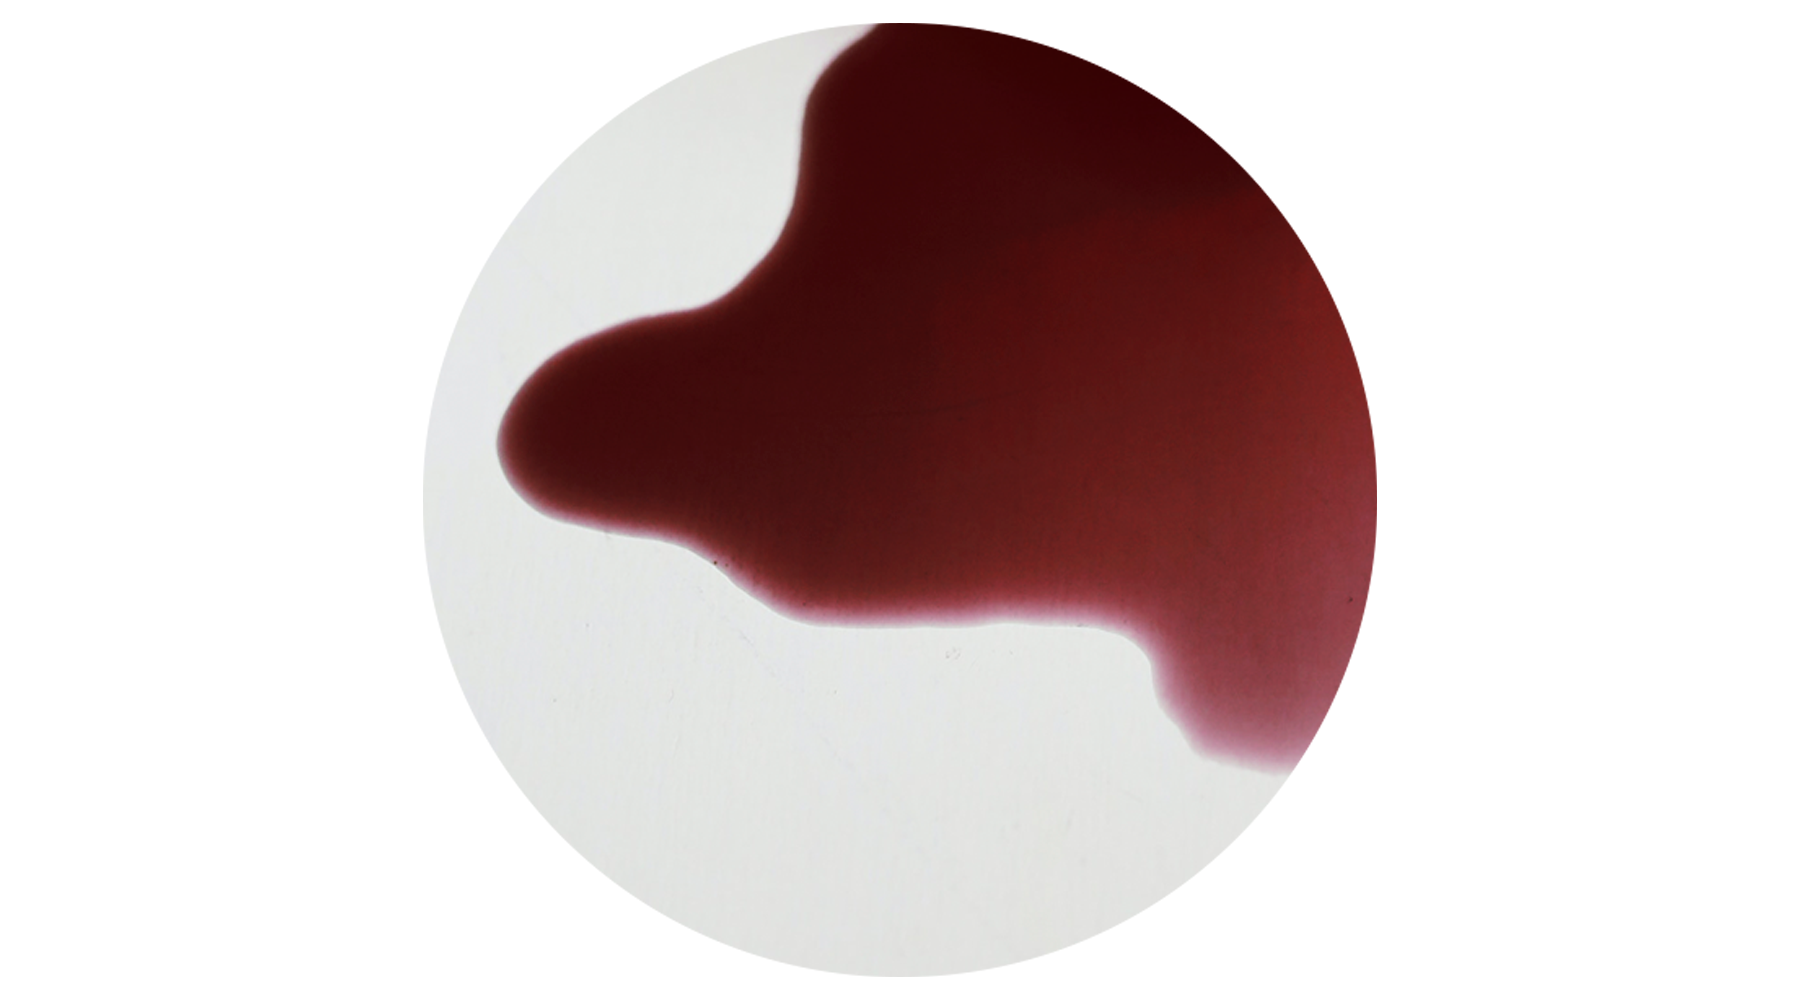 Cor do sangue menstrual: marrom, preto ou vermelho? Isso importa? - Ceverj  Histerolap